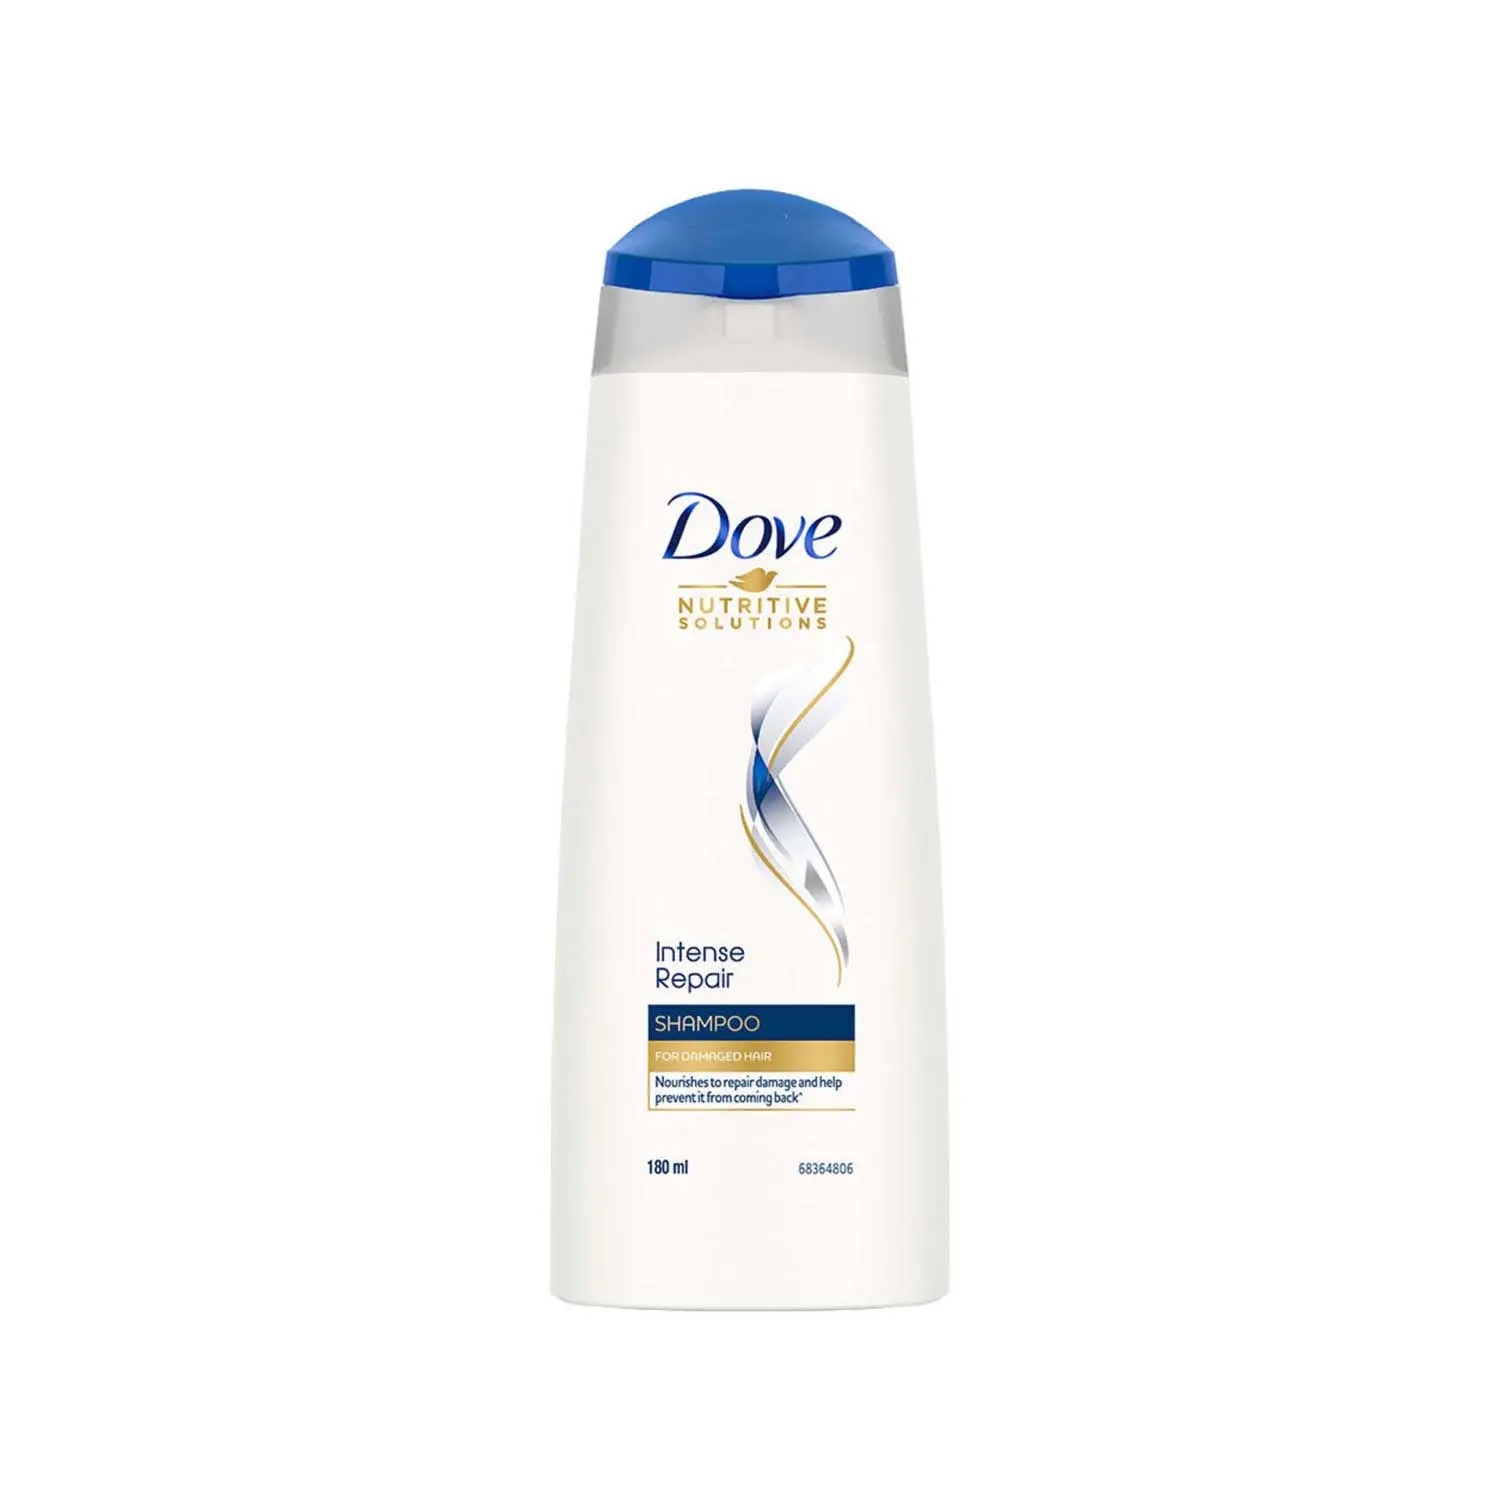 Dove | Dove Intense Repair Hair Shampoo (180ml)